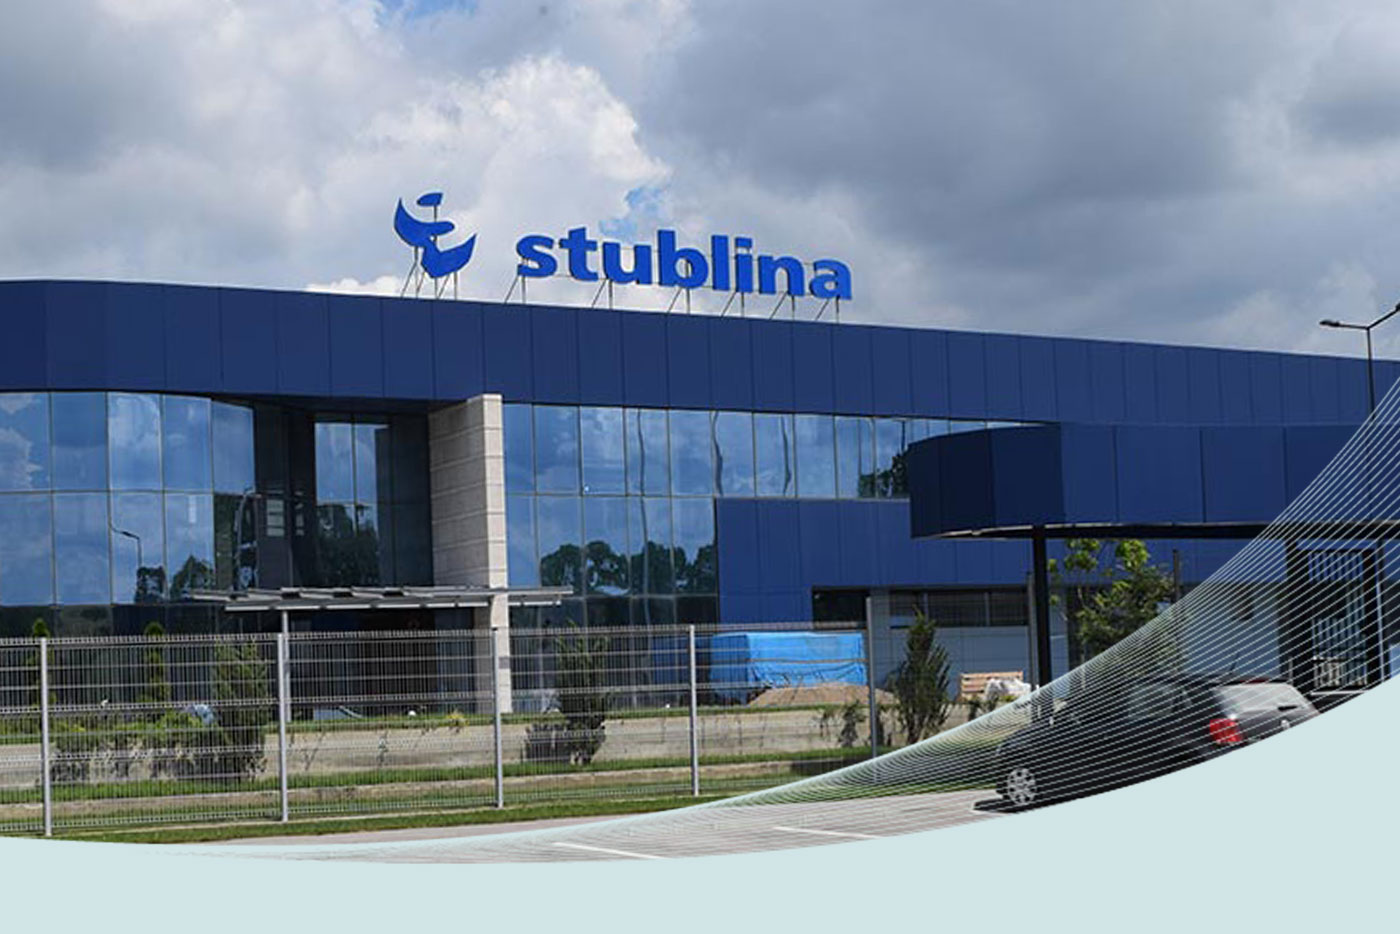 Stublina • CIRA Ltd